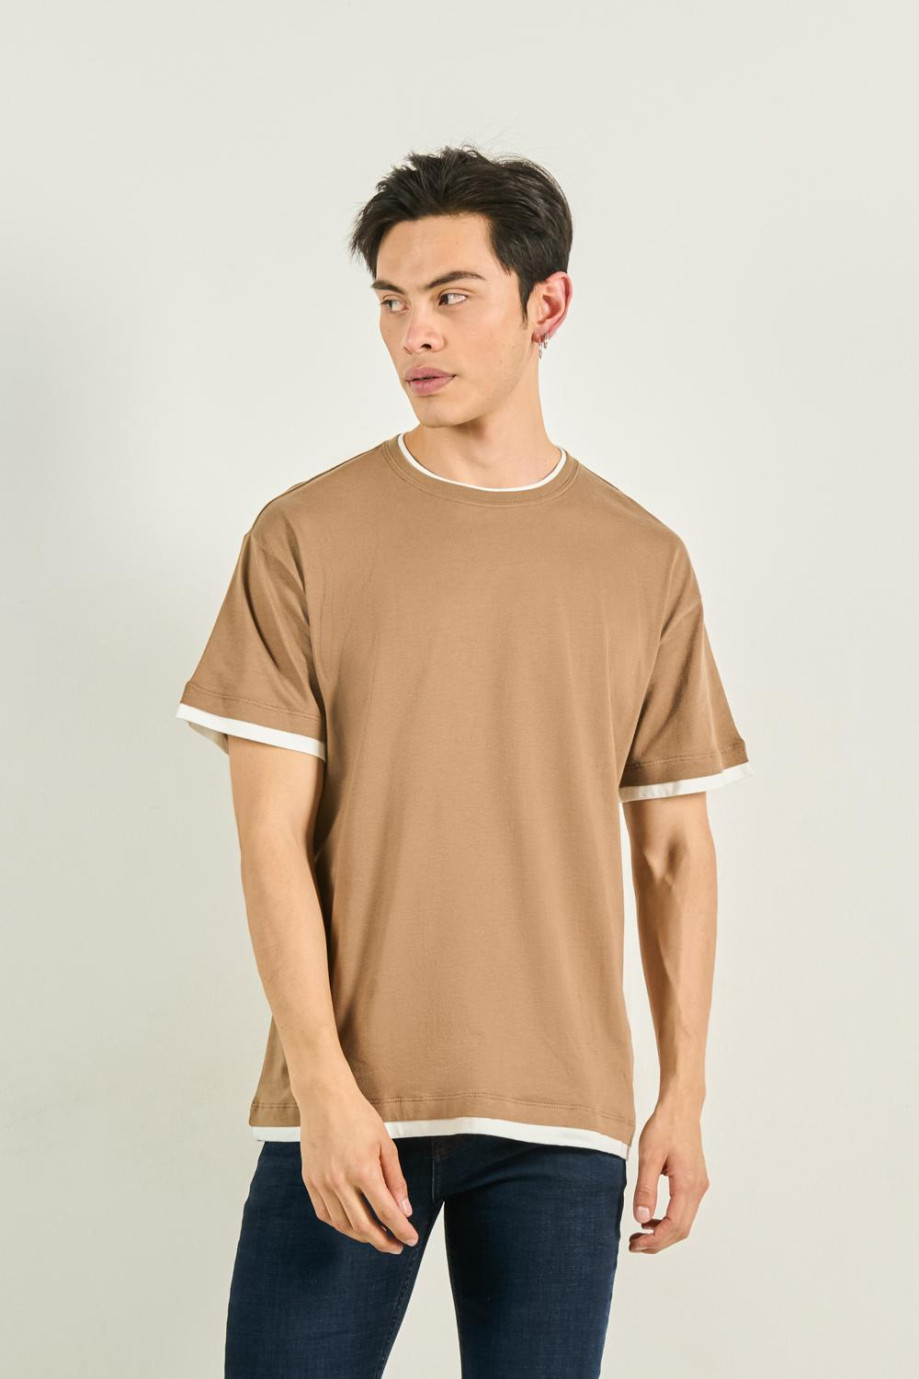 Camiseta café manga corta oversize con contrastes